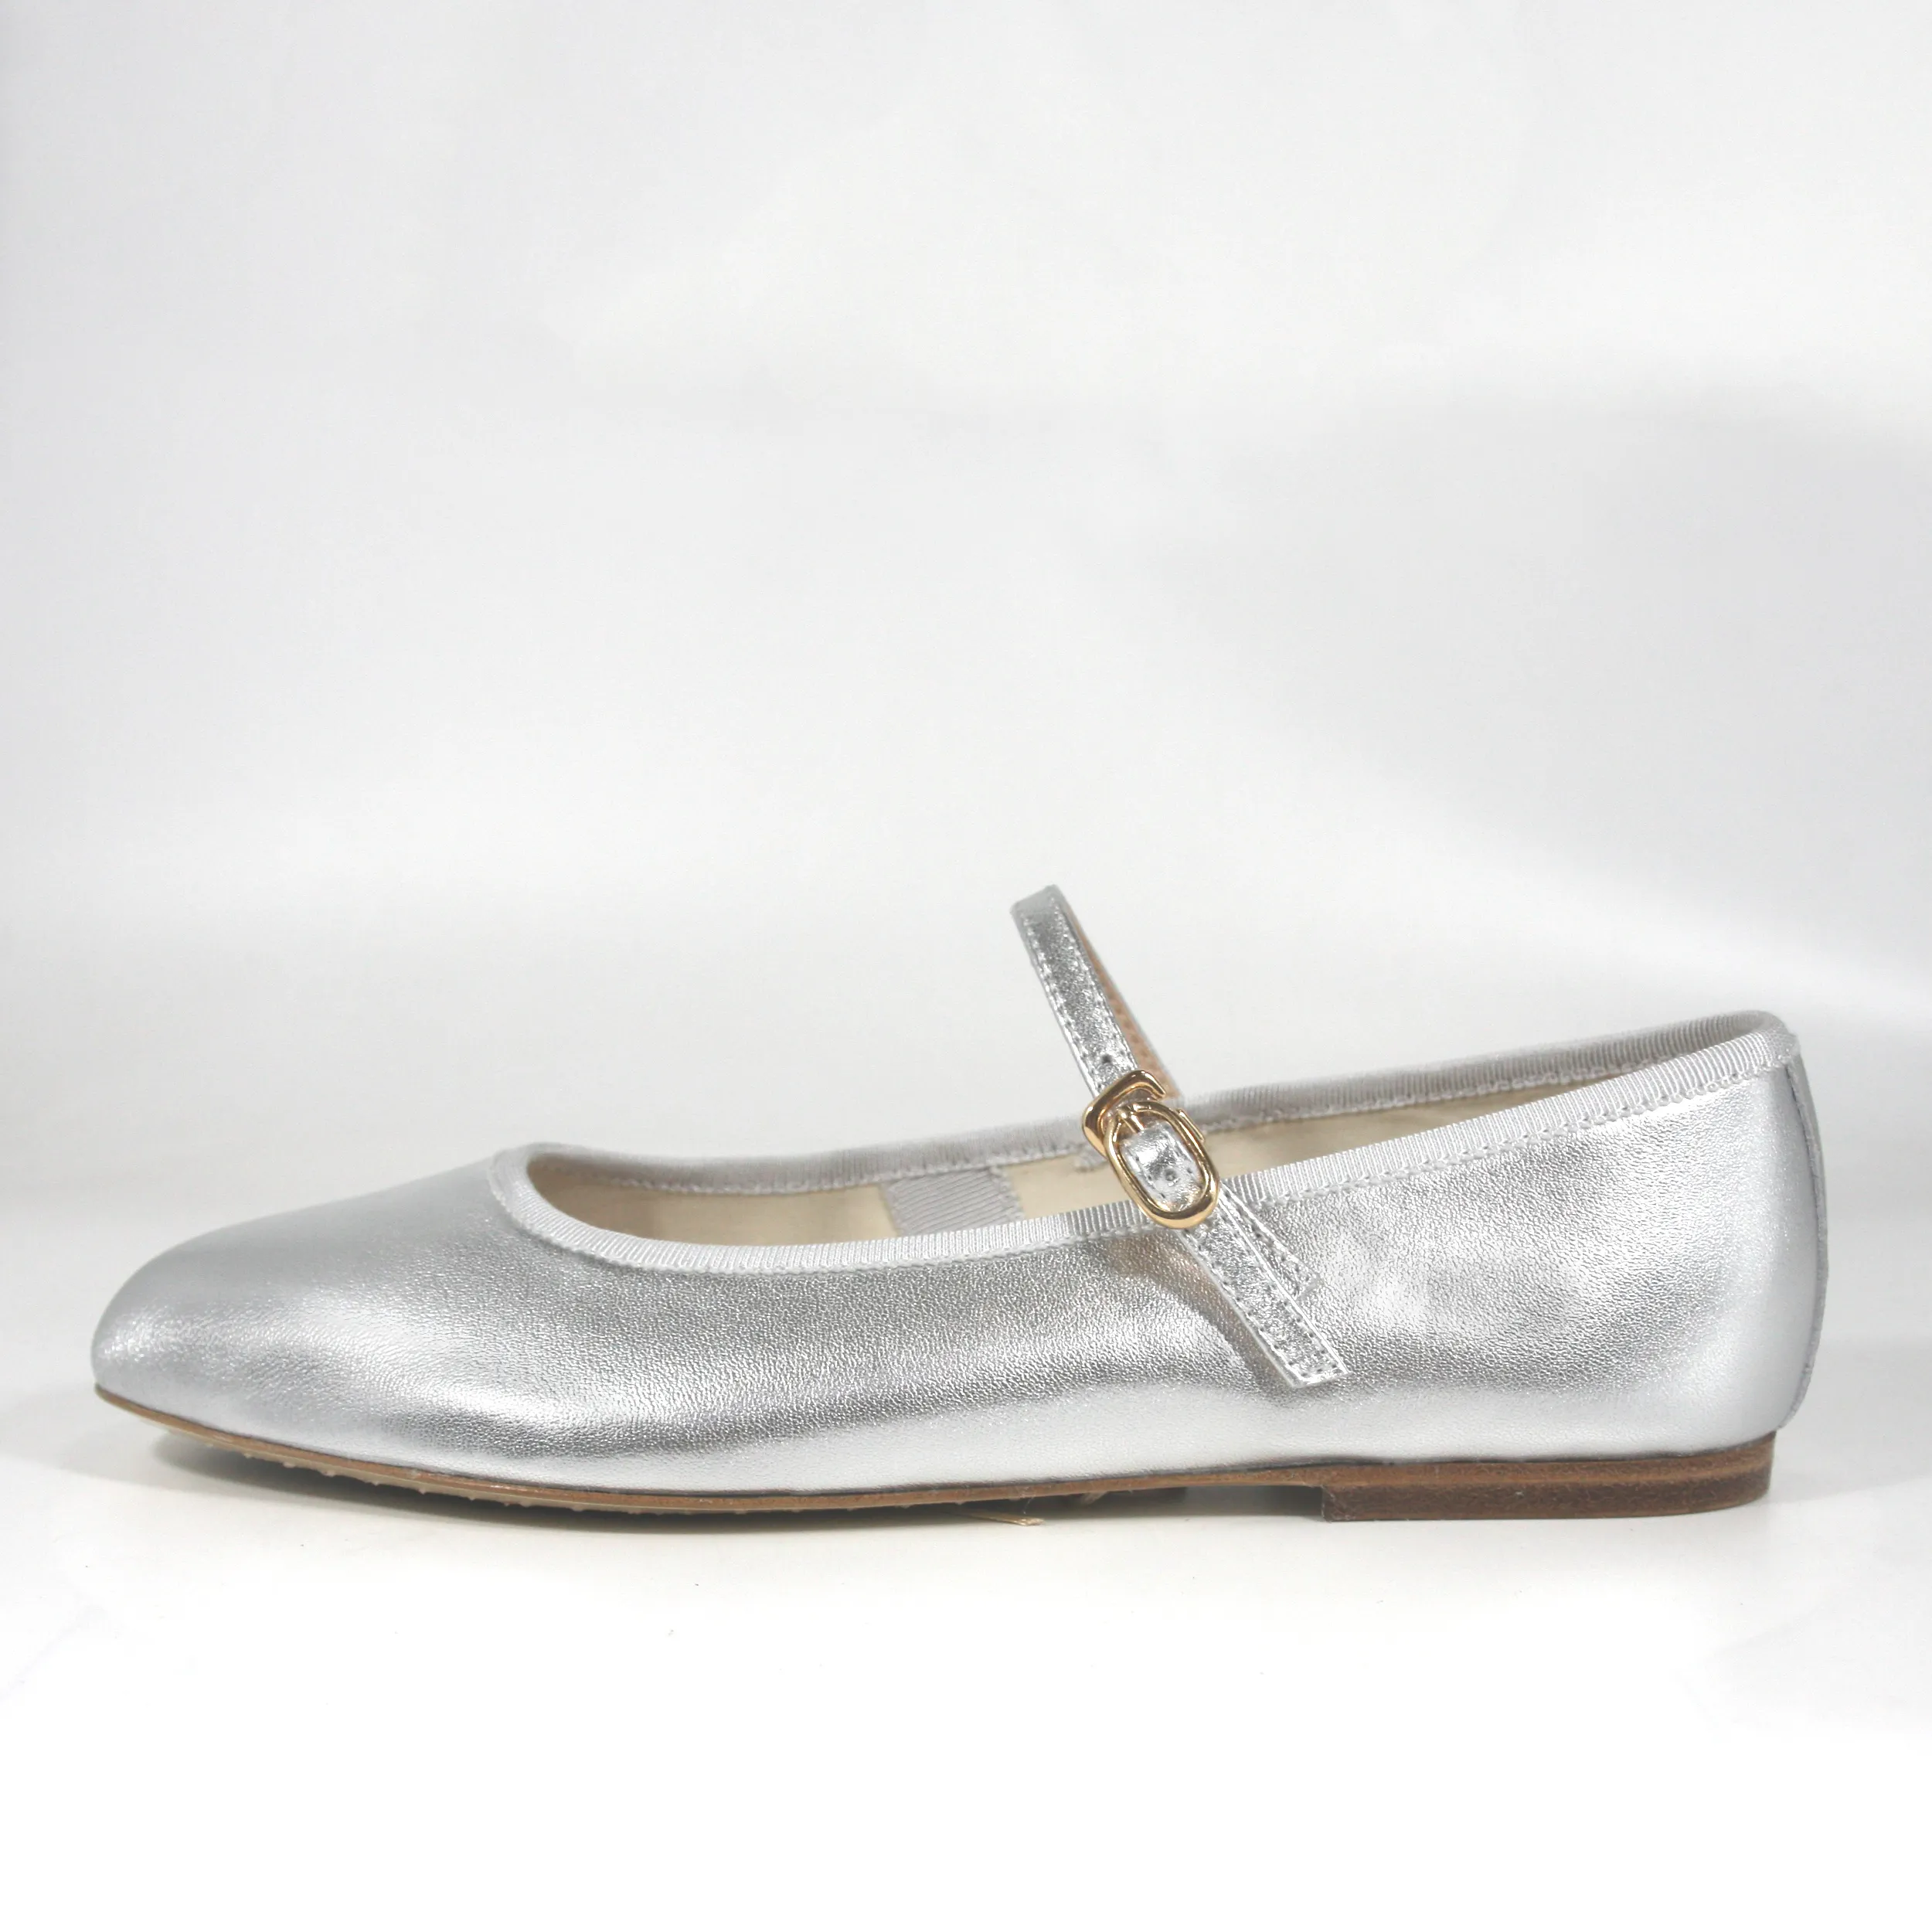 फैक्टरी थोक सुरुचिपूर्ण नृत्य बैले जूते शैली की पोशाक मैरी जेन फ्लैट्स इंटिंग बकसुआ बेल्ट महिला फ्लैट जूते